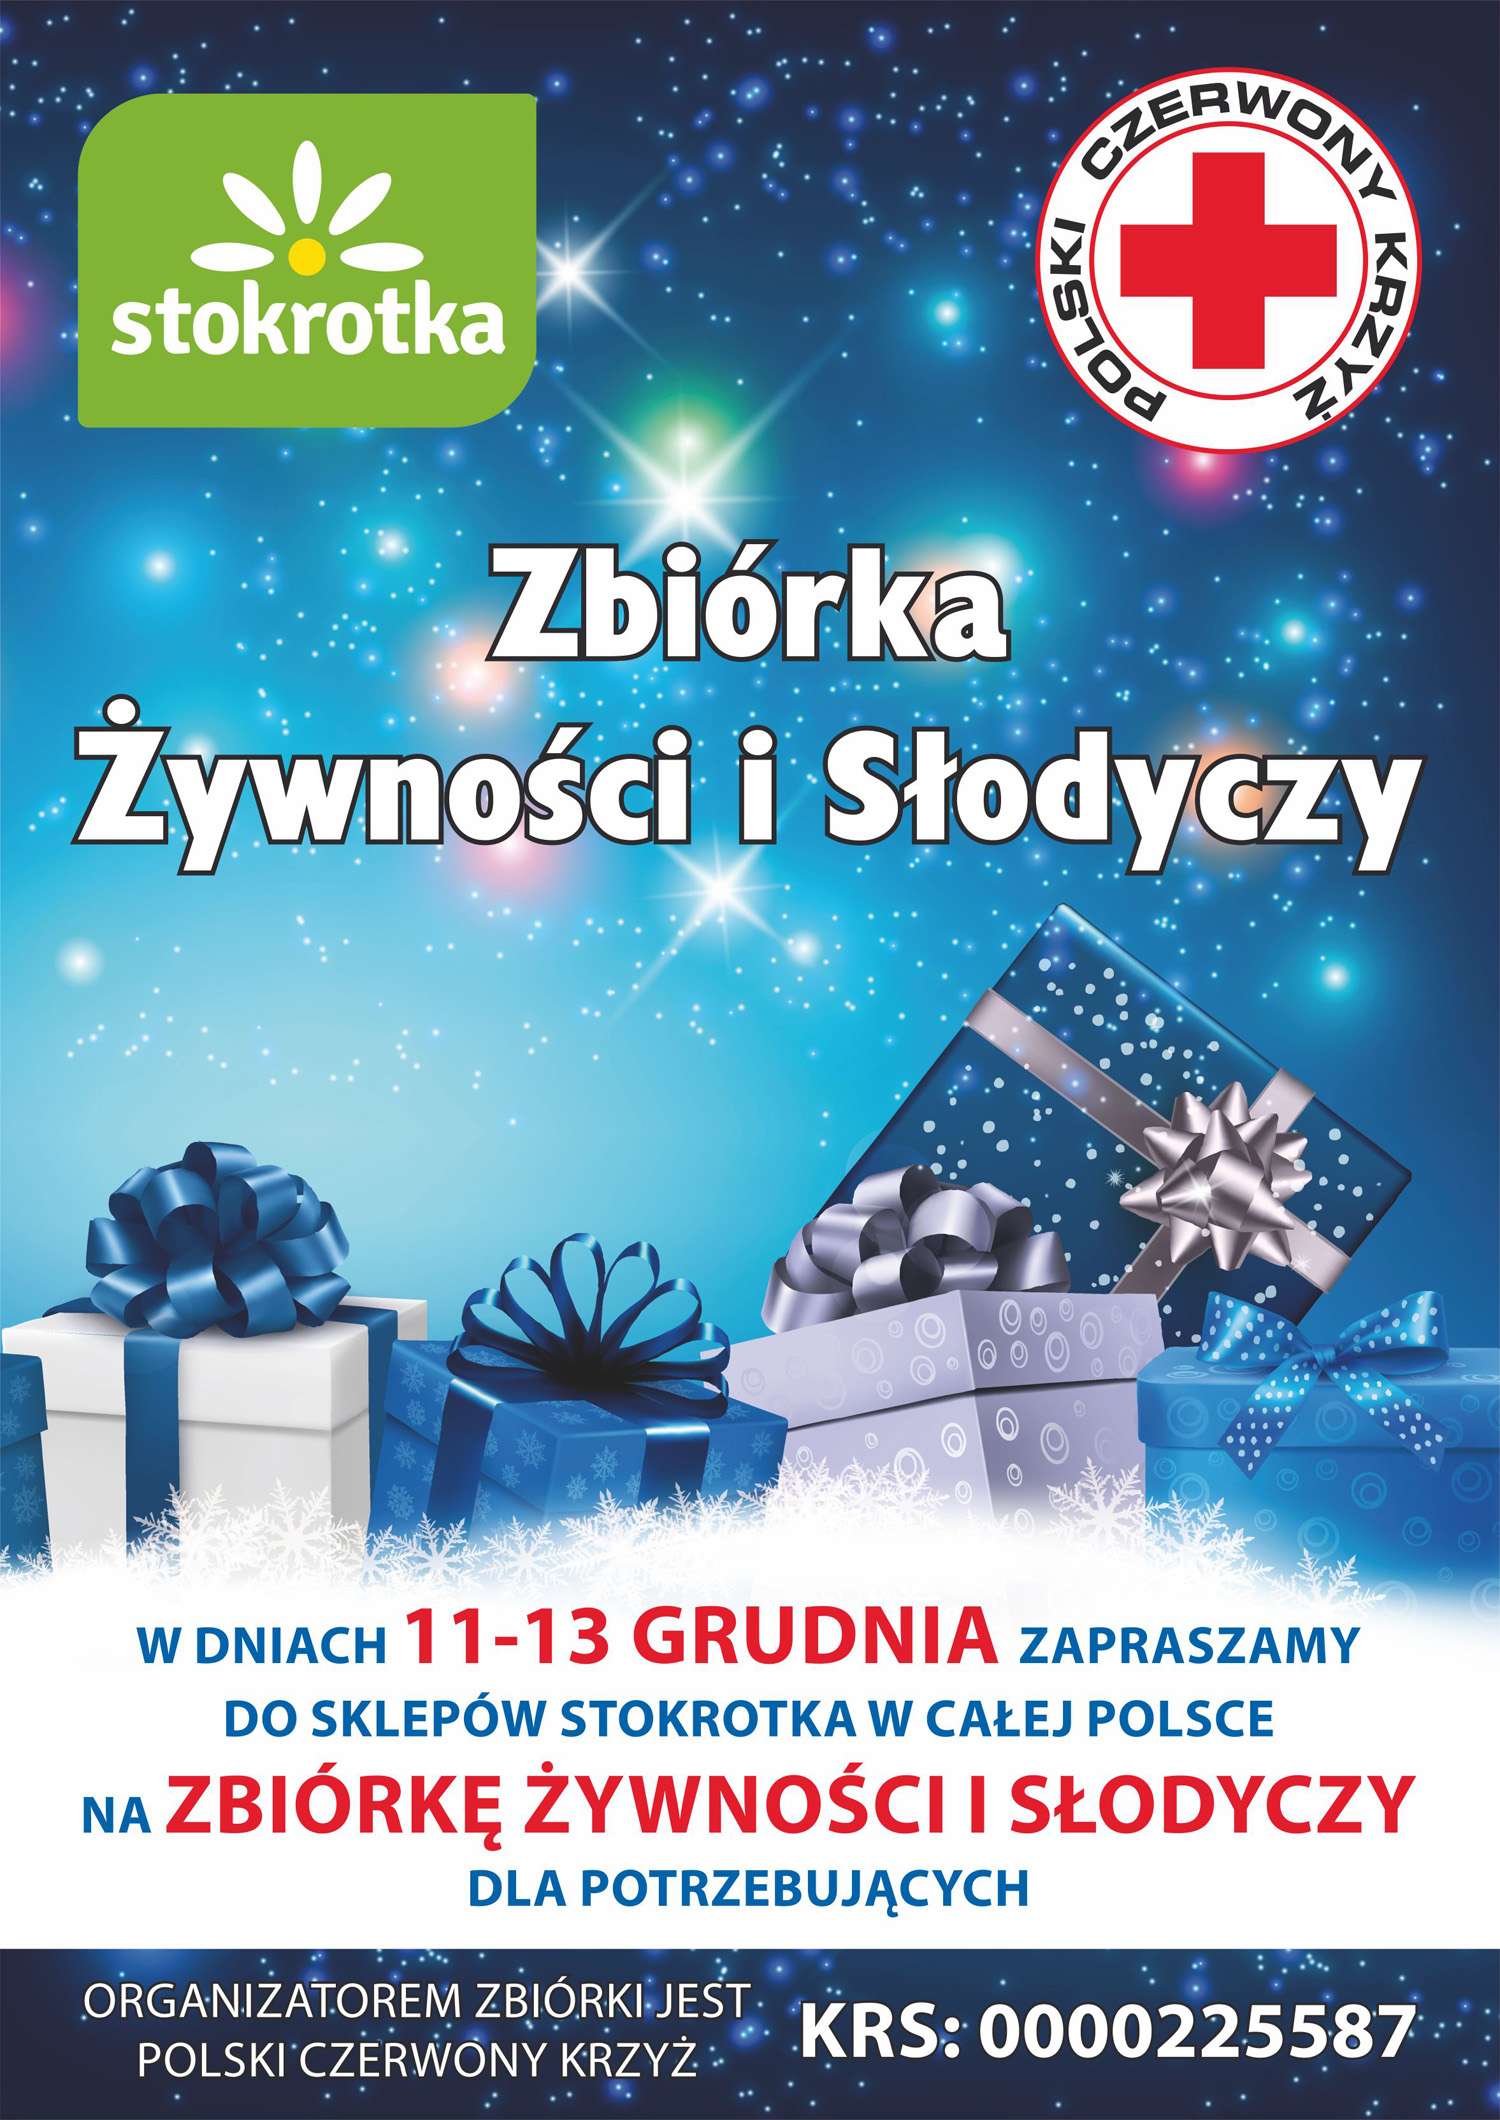 Mazowiecki Oddział Okręgowy Polskiego Czerwonego Krzyża wspólnie z siecią marketów i supermarketów Stokrotka organizuje świąteczną zbiórkę żywności